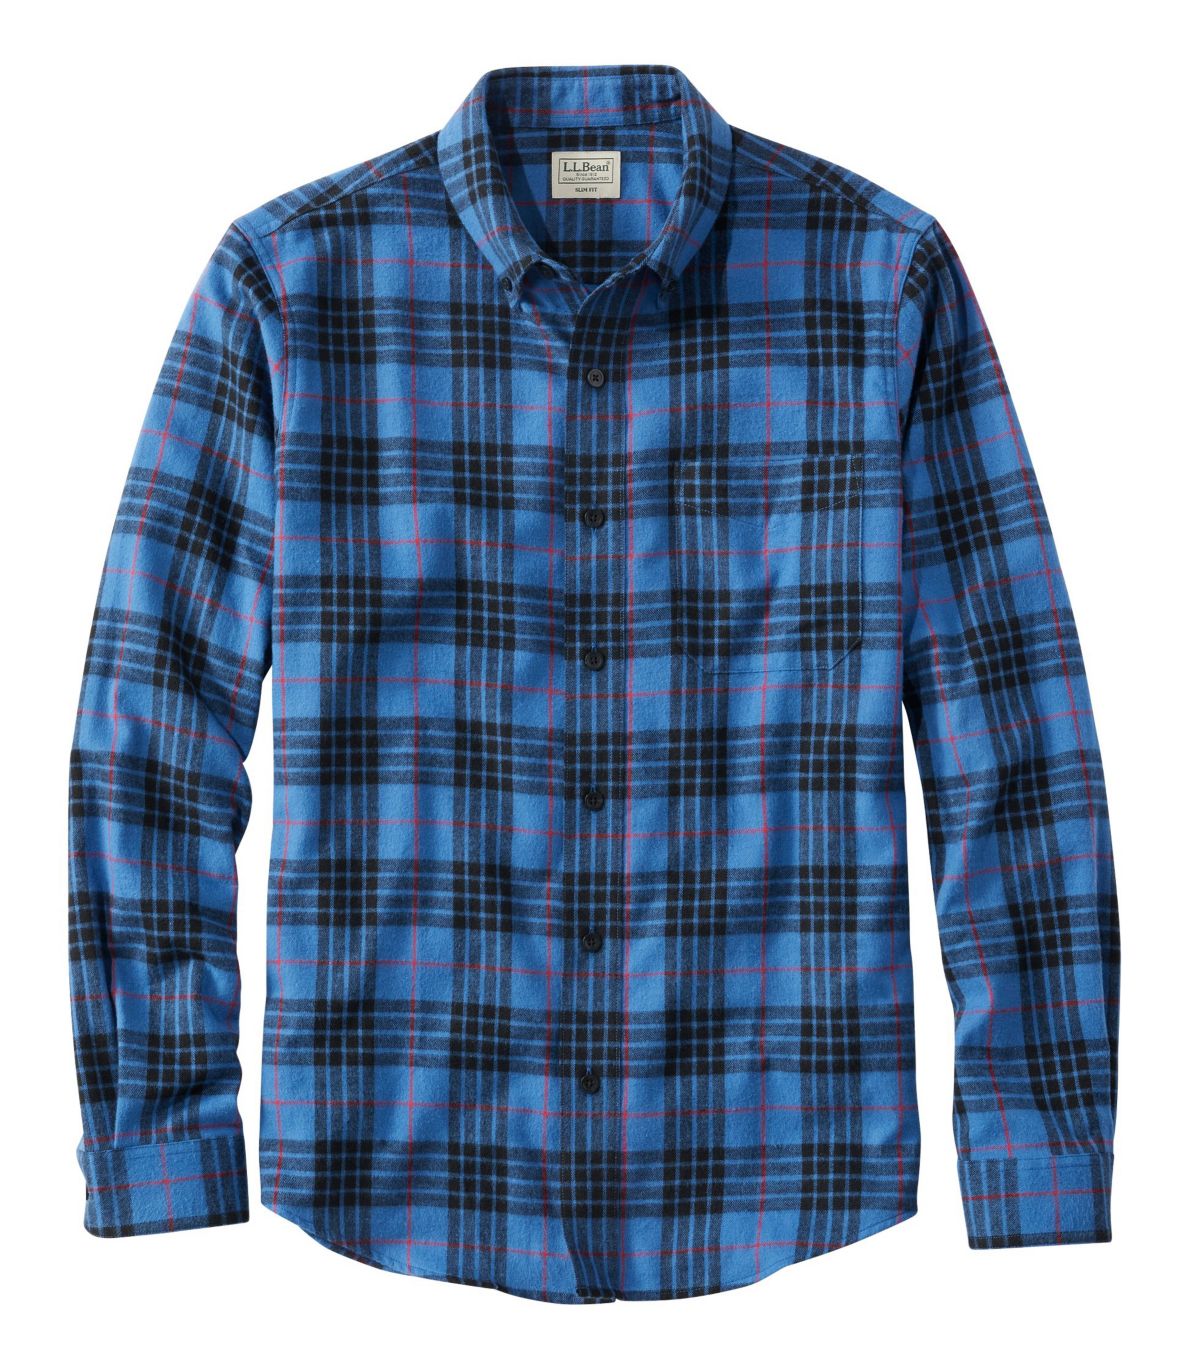 Men's Scotch Plaid Flannel Shirt, Slim Fit